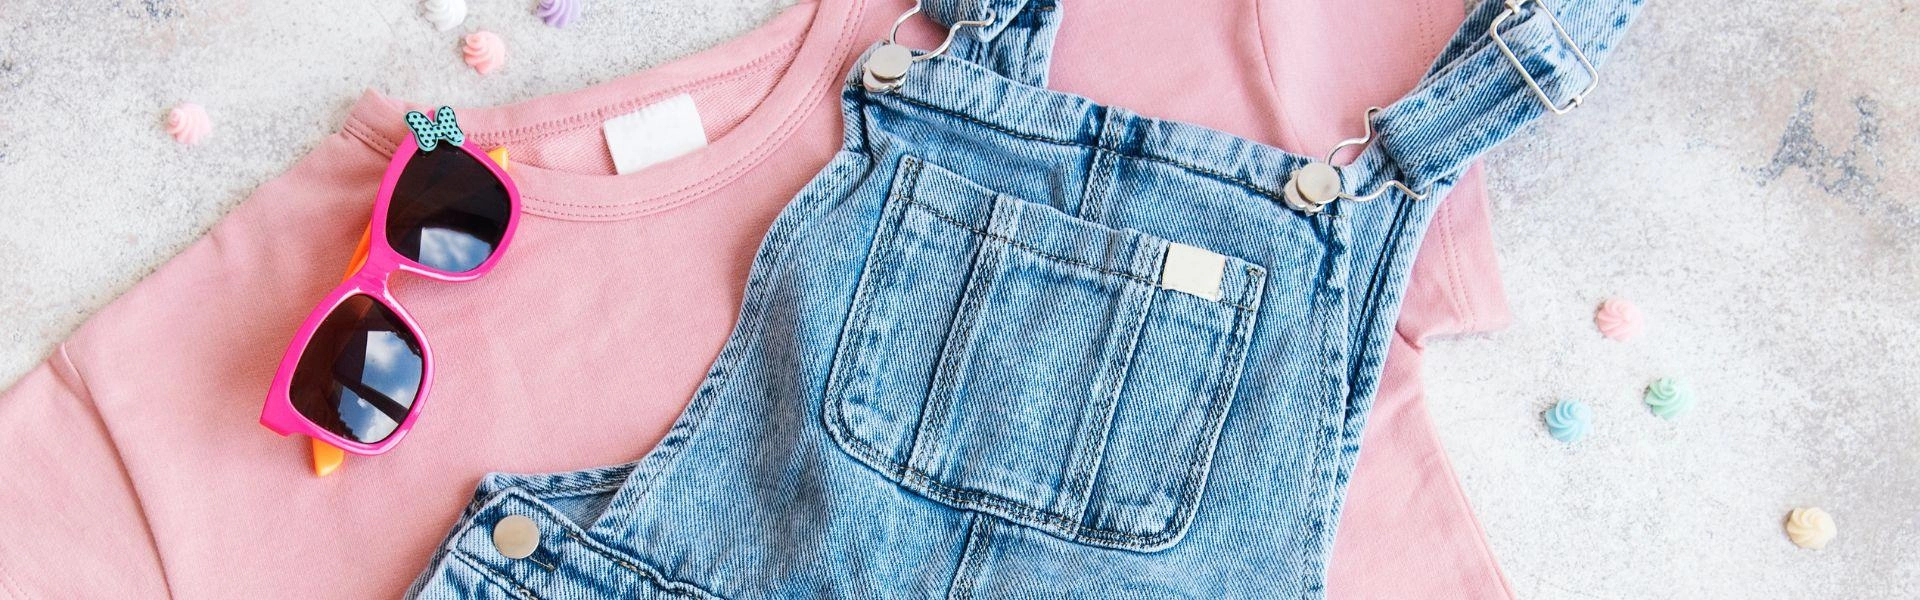 Roupas infantis: uma camisa rosa e jardineira jeans.